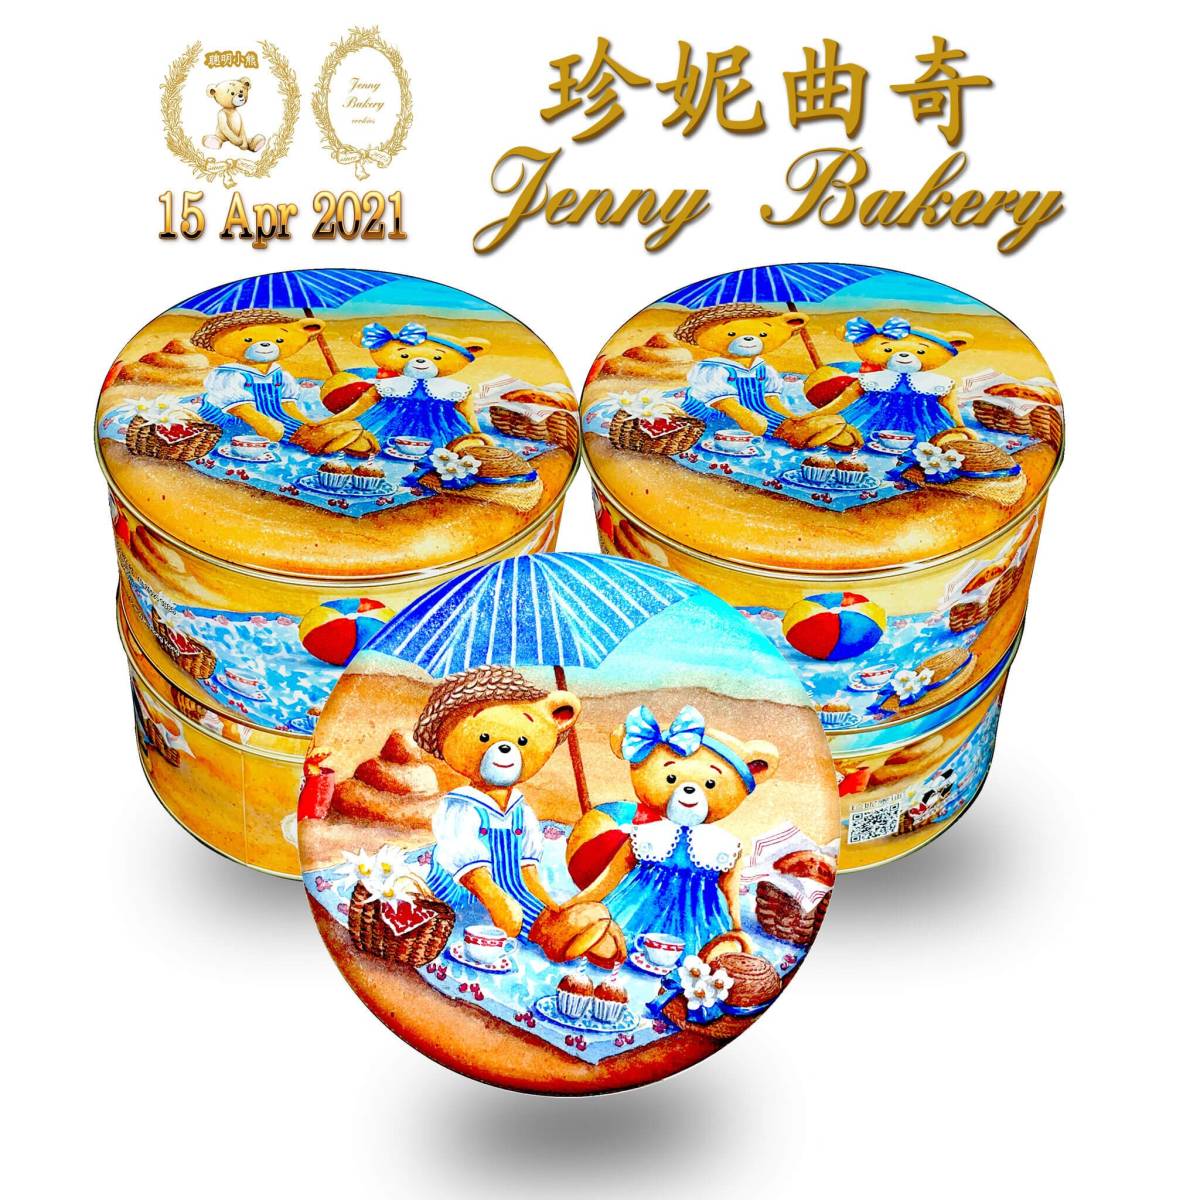  Hong Kong прямая поставка товар / JennyBakery Jenny беж ka Lee печенье печенье набор *4mix S размер 320g* очень популярный ....!!